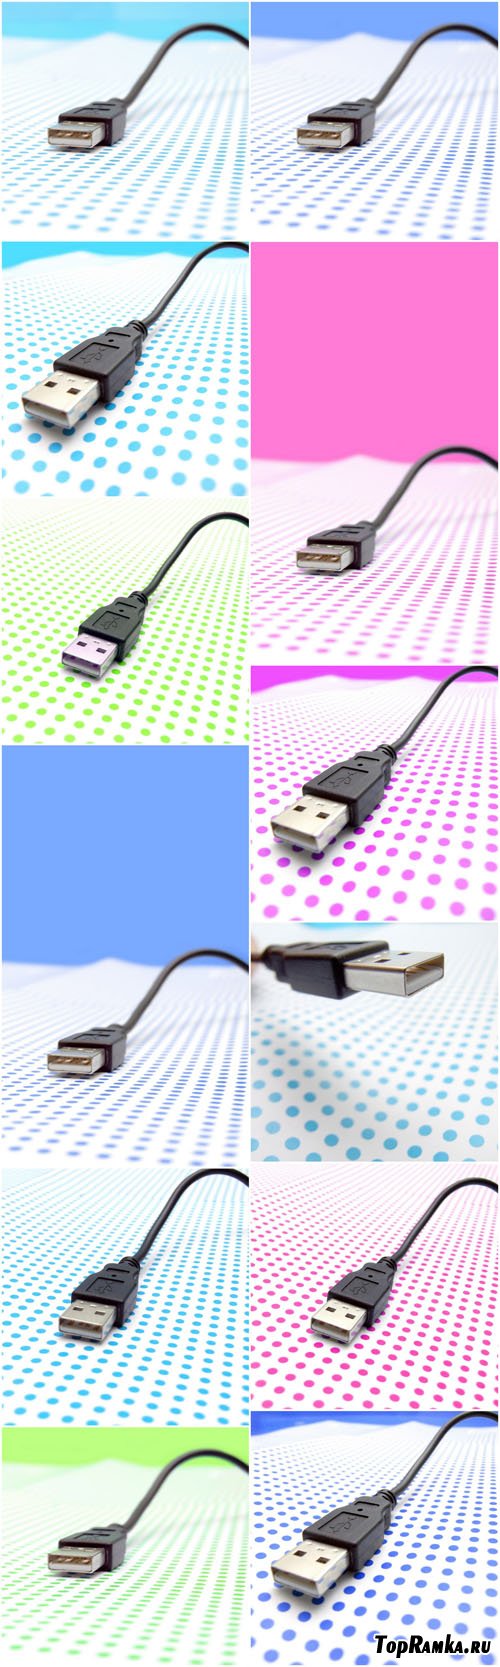 Photo Cliparts - USB